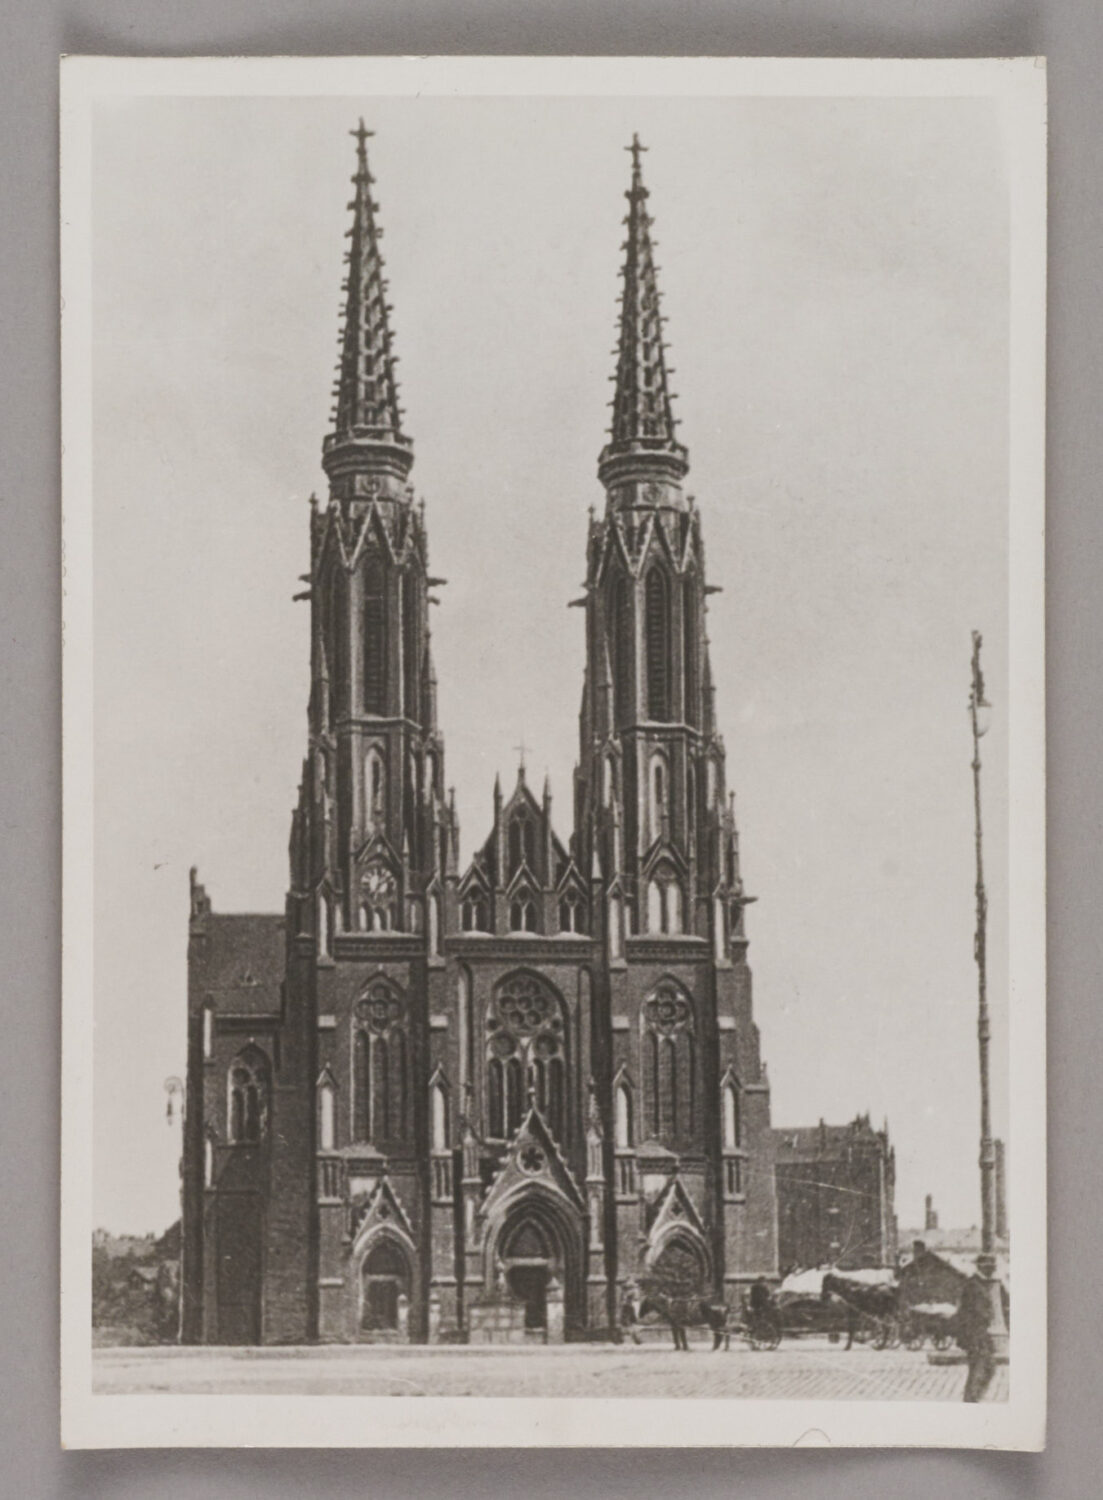 Zdjęcie katedry praskiej od frontu. Po bokach dwie strzeliste, wysokie wieże.